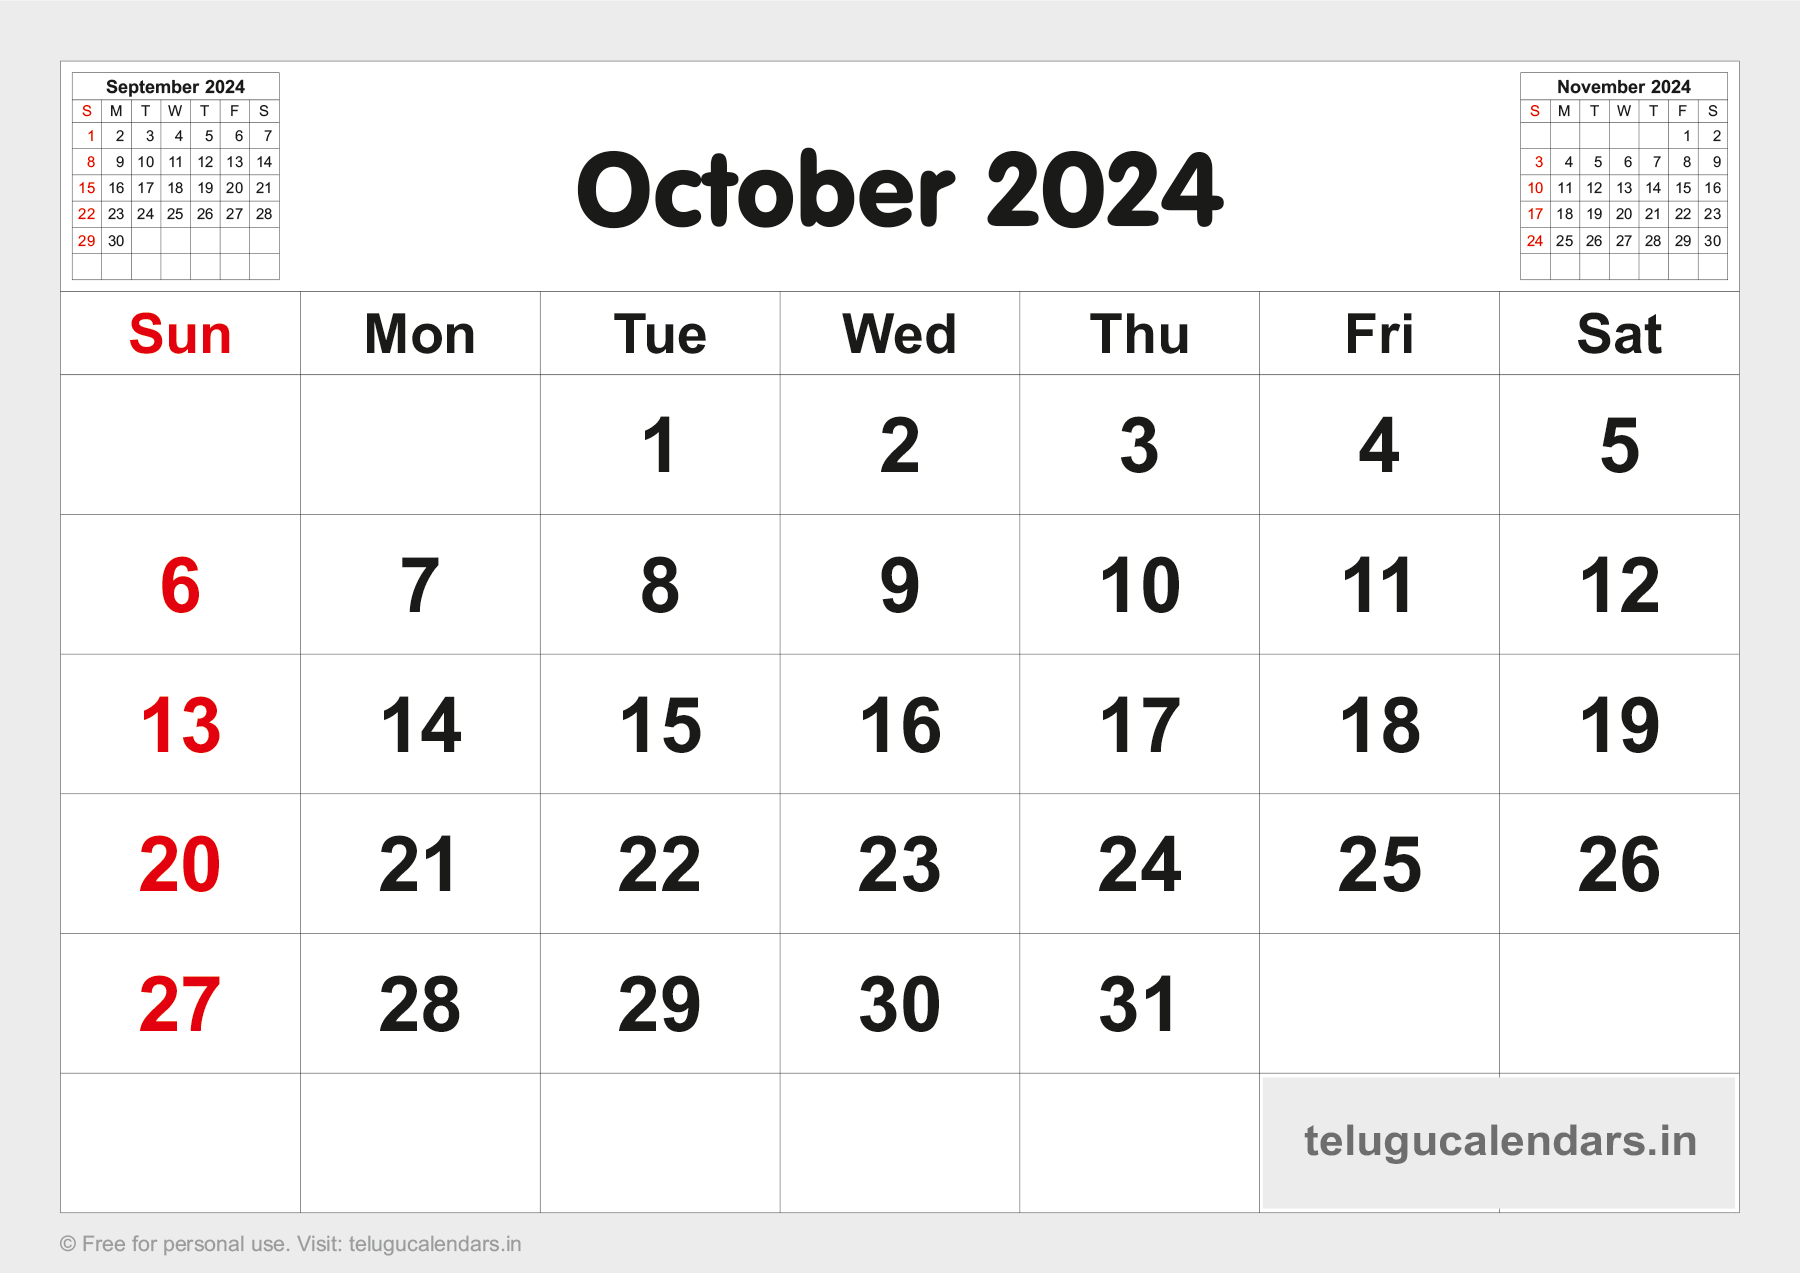 Telugu Blank Calendar 2024 October 2024 Telugu Calendar PDF